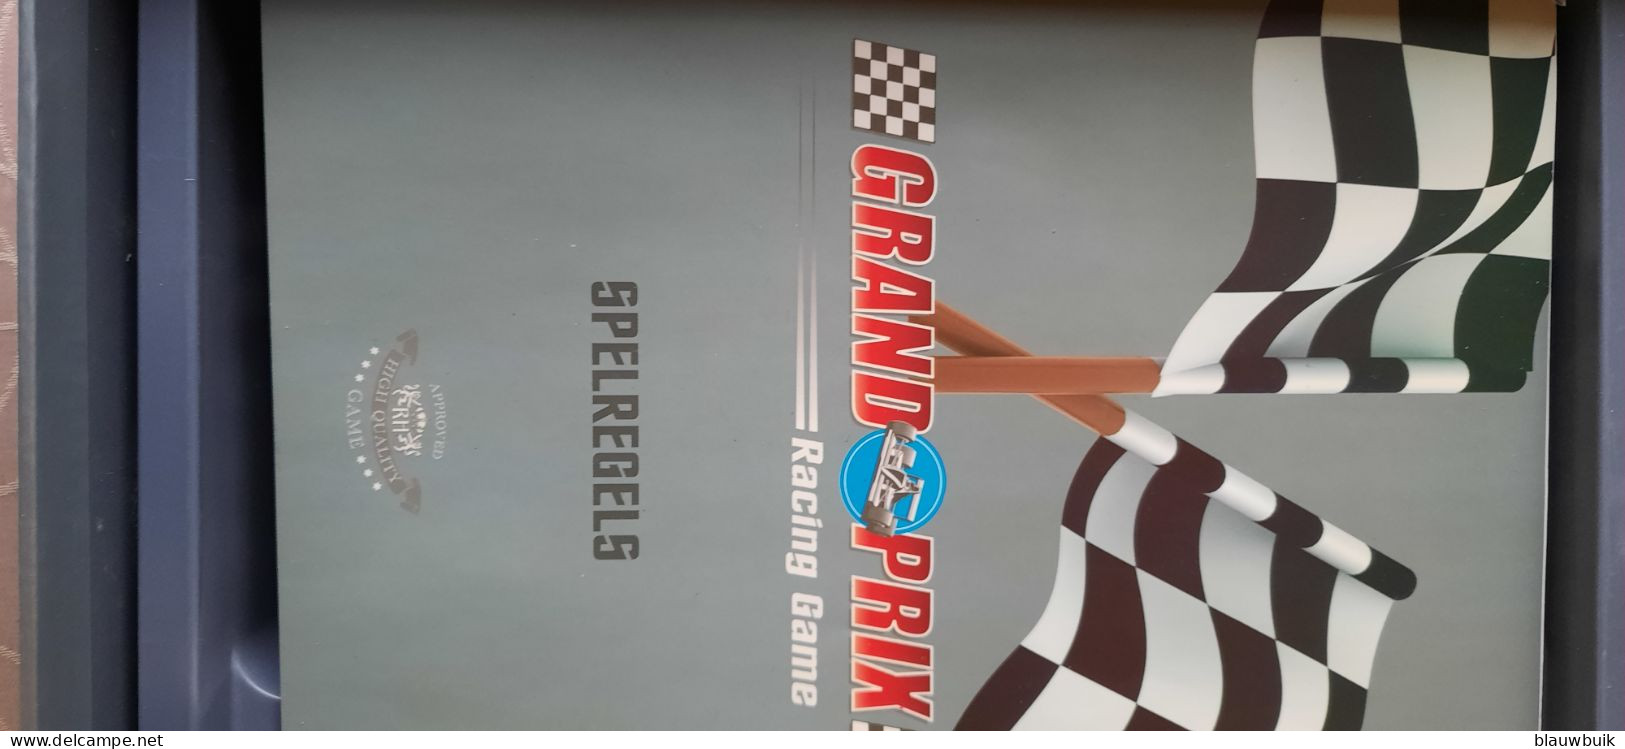 Grand Prix racing game, bordspel met raceauto's